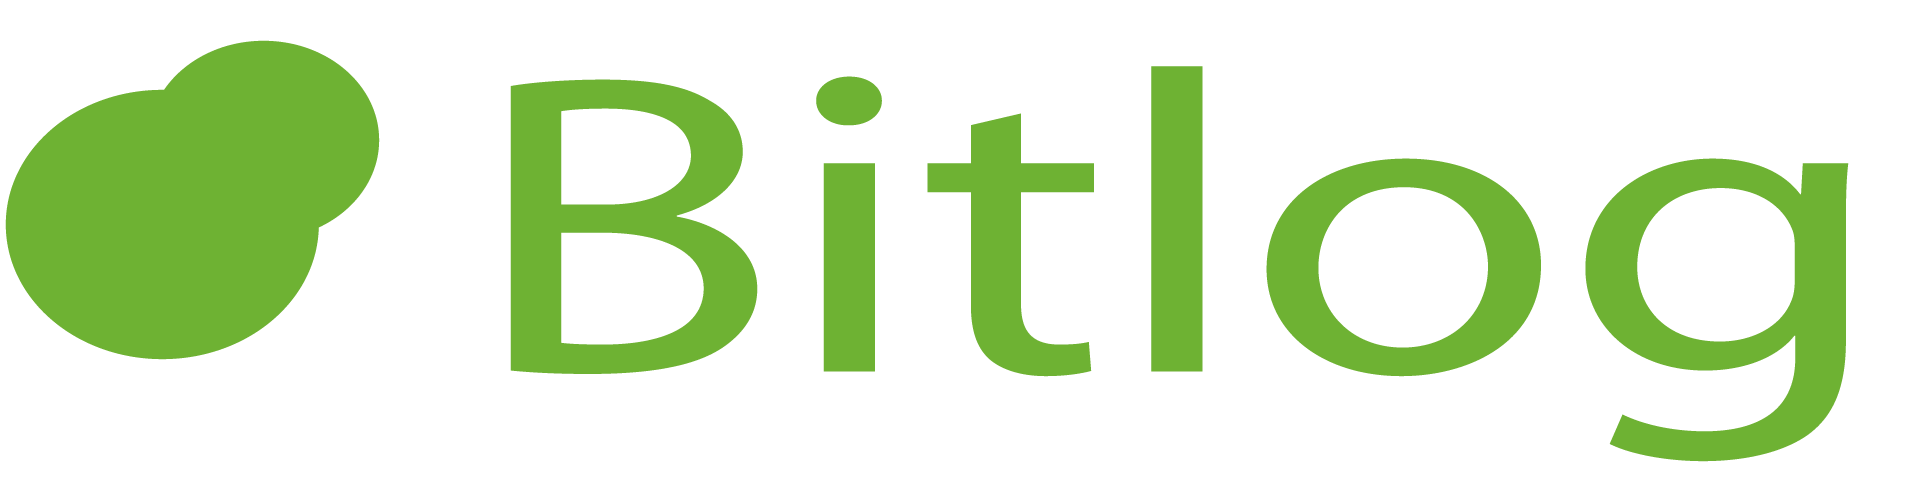 Bitlog logo